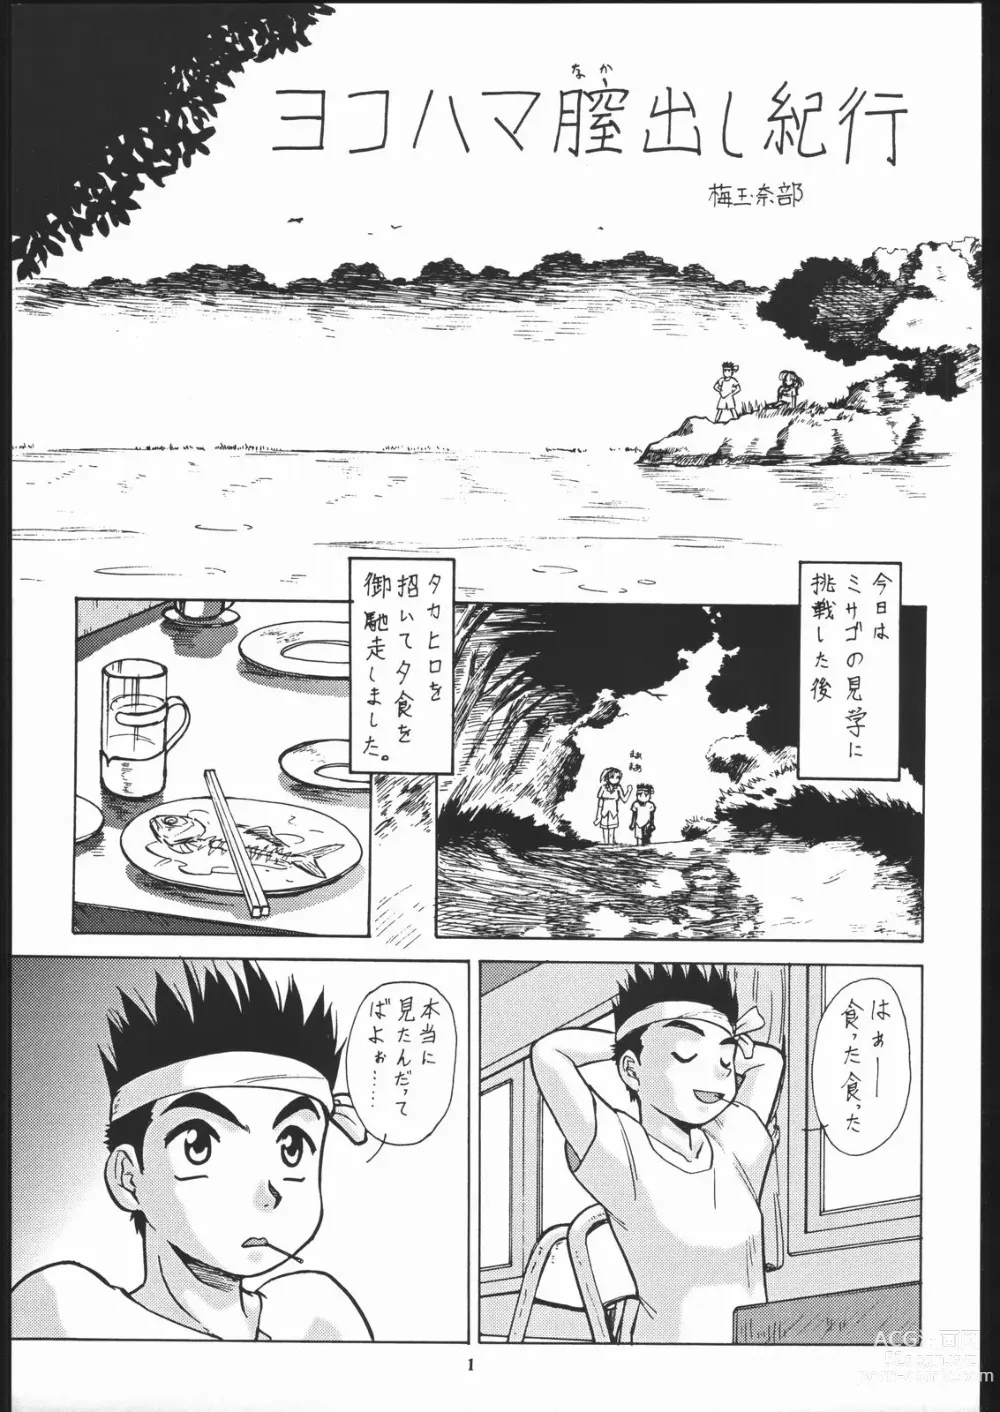 Page 2 of doujinshi Super Robokko Taisen